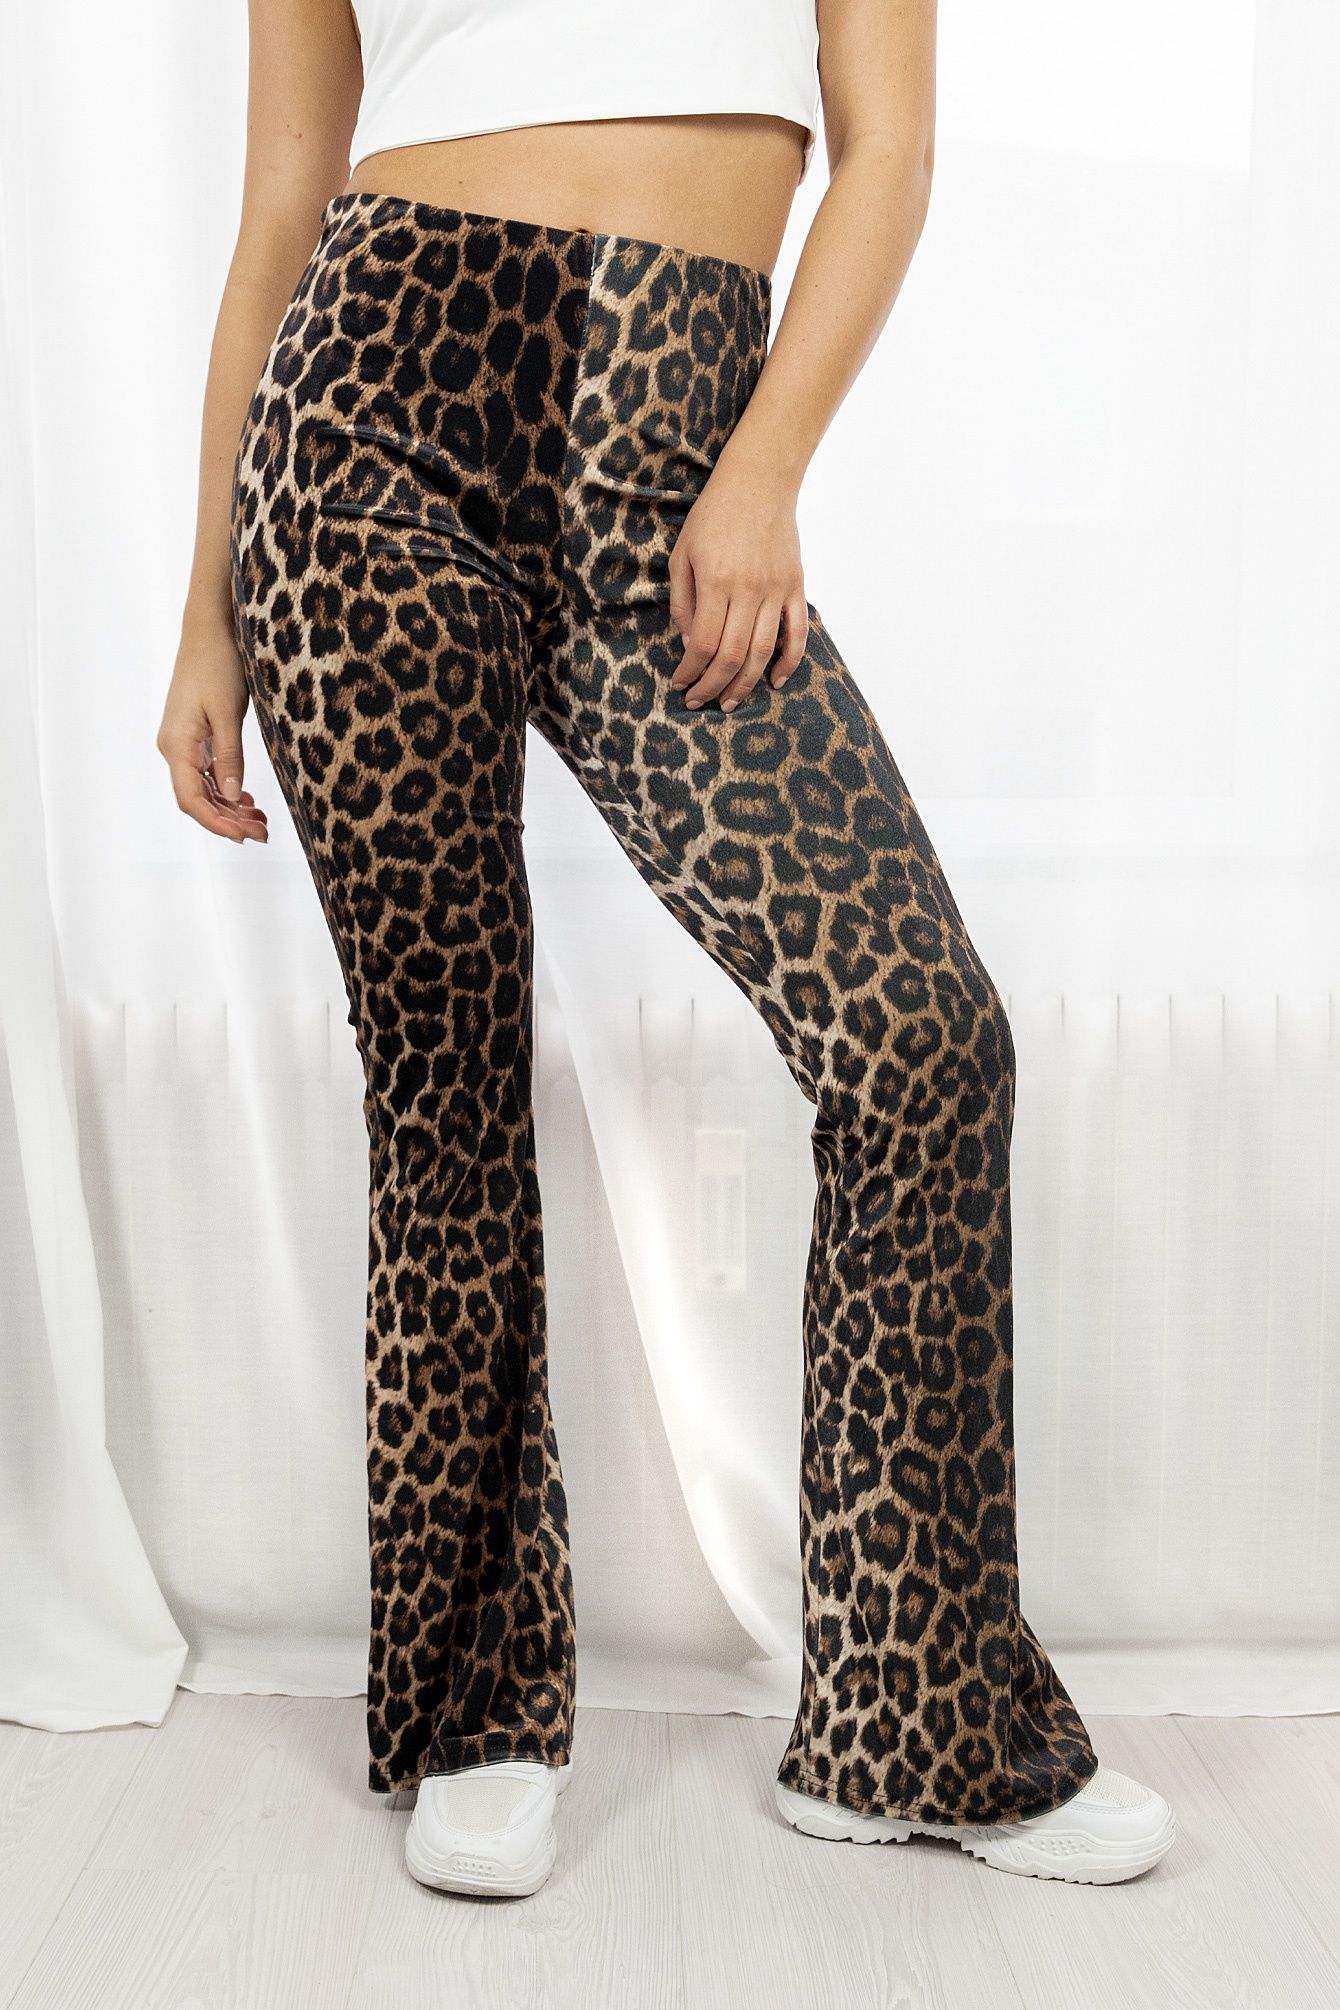 Leopard flared broek ILeopard broek met wijde pijpen - Famous Store